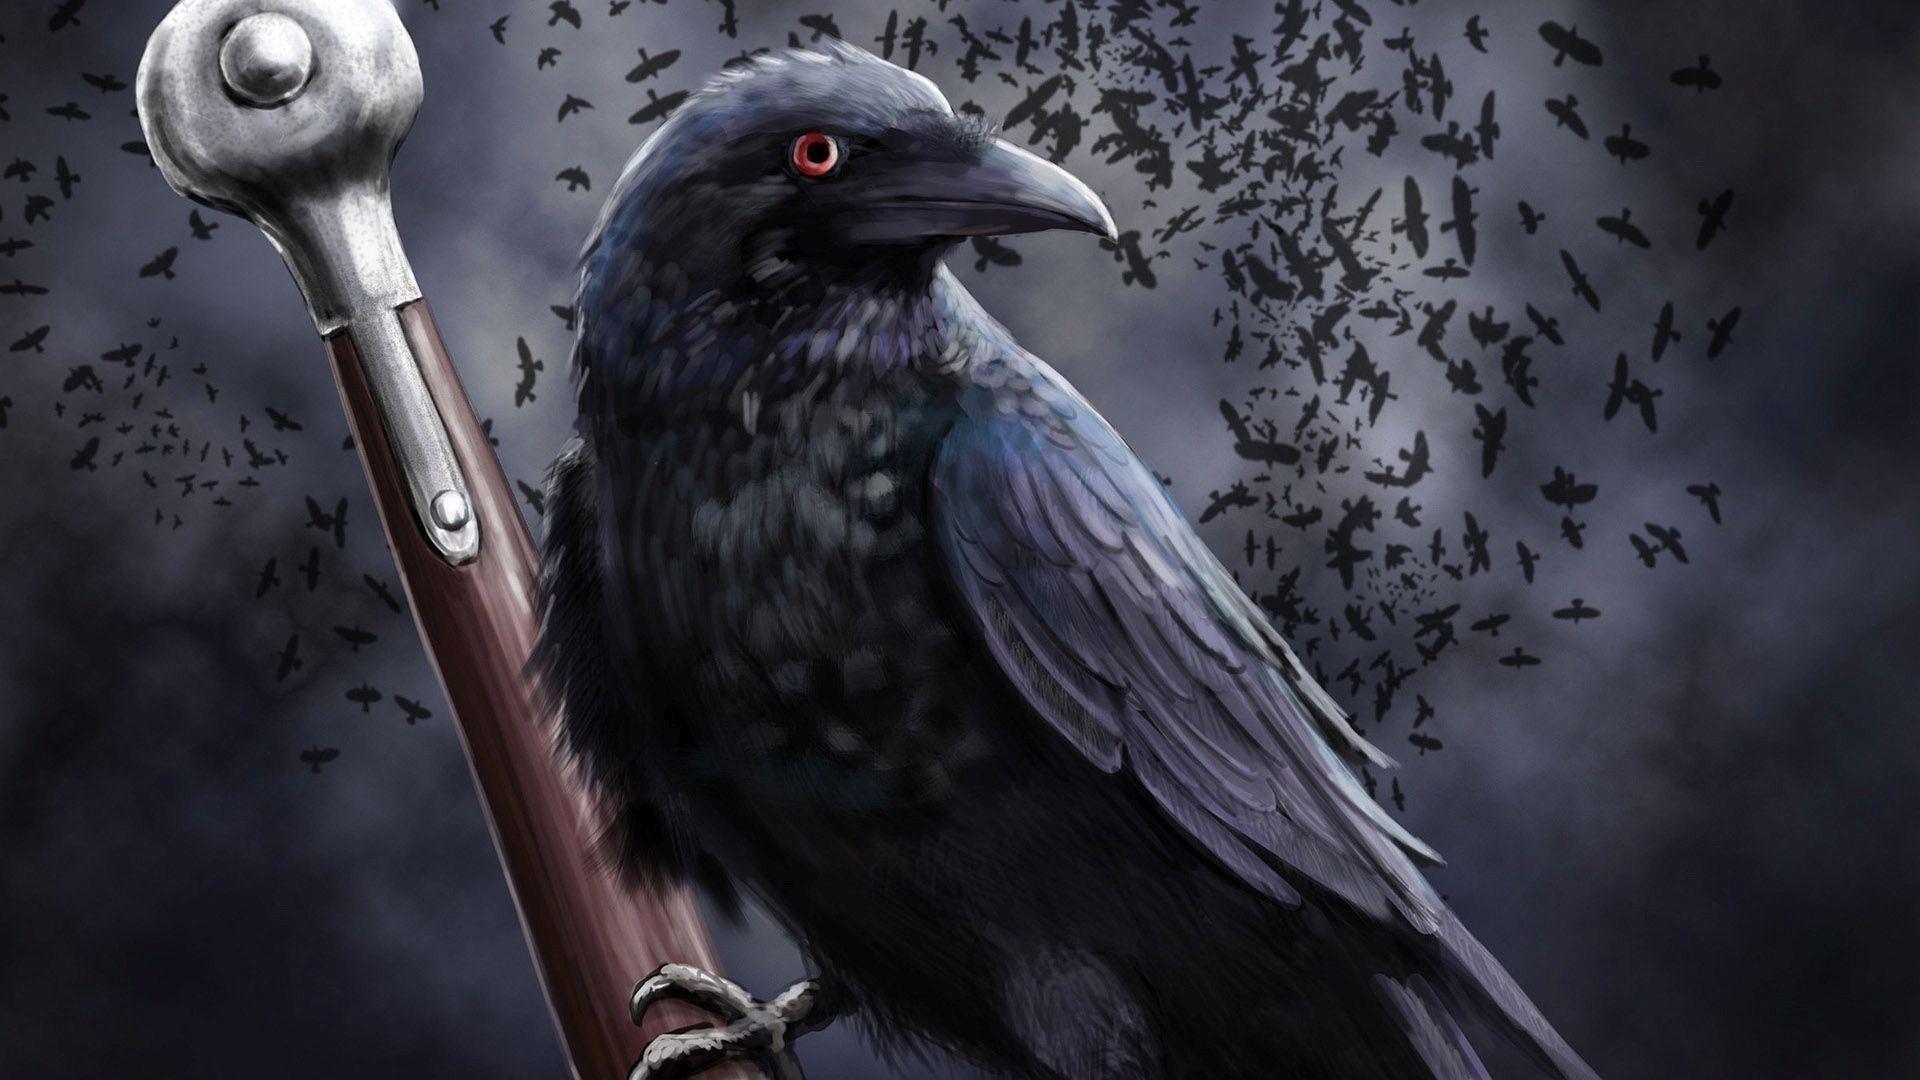 Raven on the sword HD desktop wallpaper, Widescreen, High